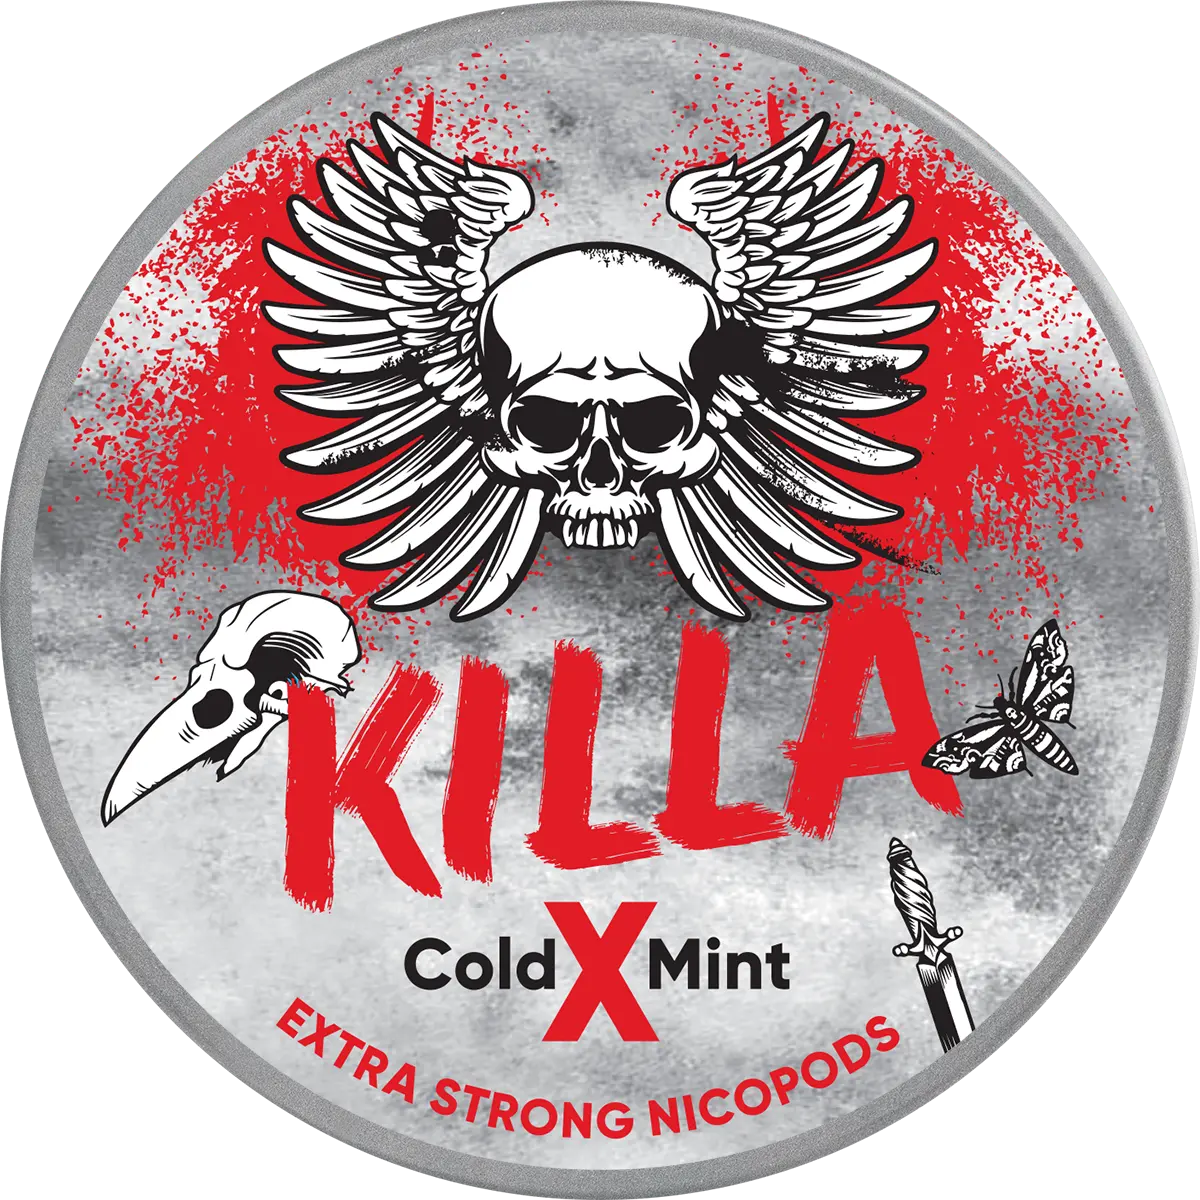 Killa Cold X Mint 10g 16mg/g